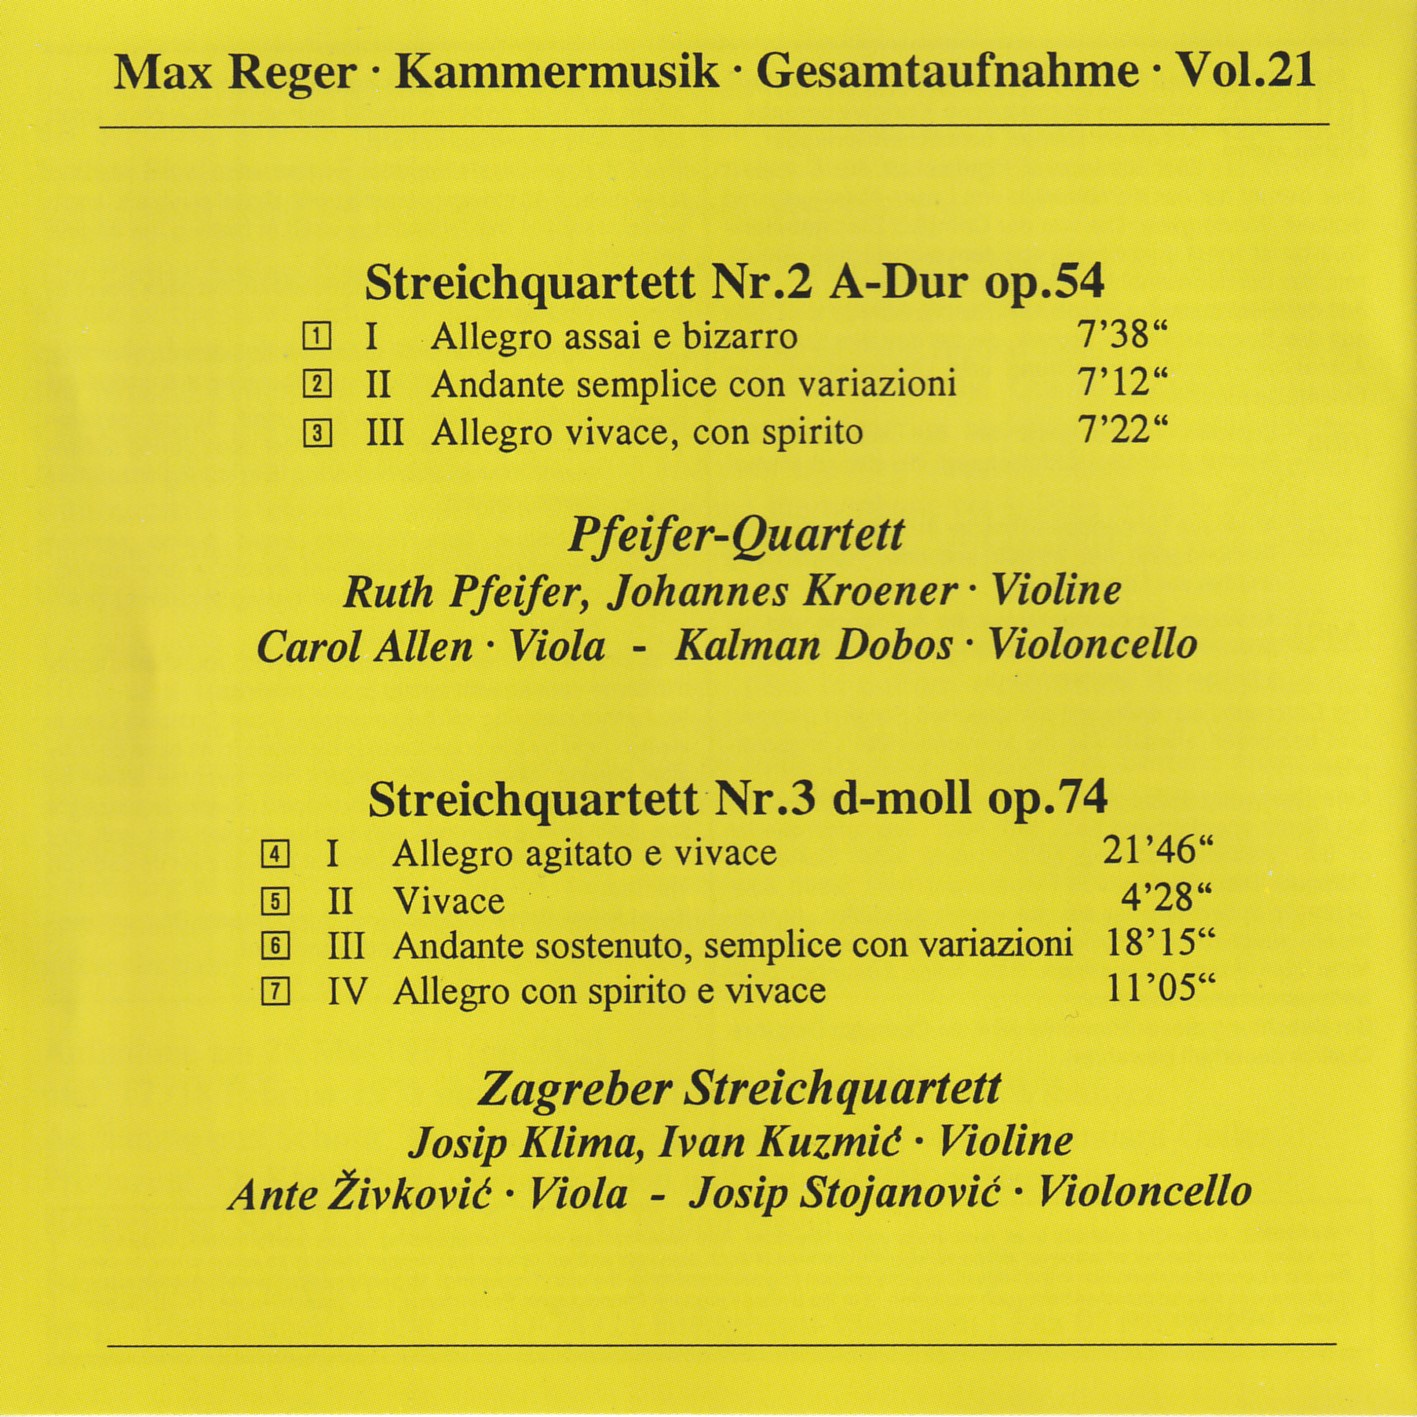 Max Reger - Kammermusik komplett Vol. 21